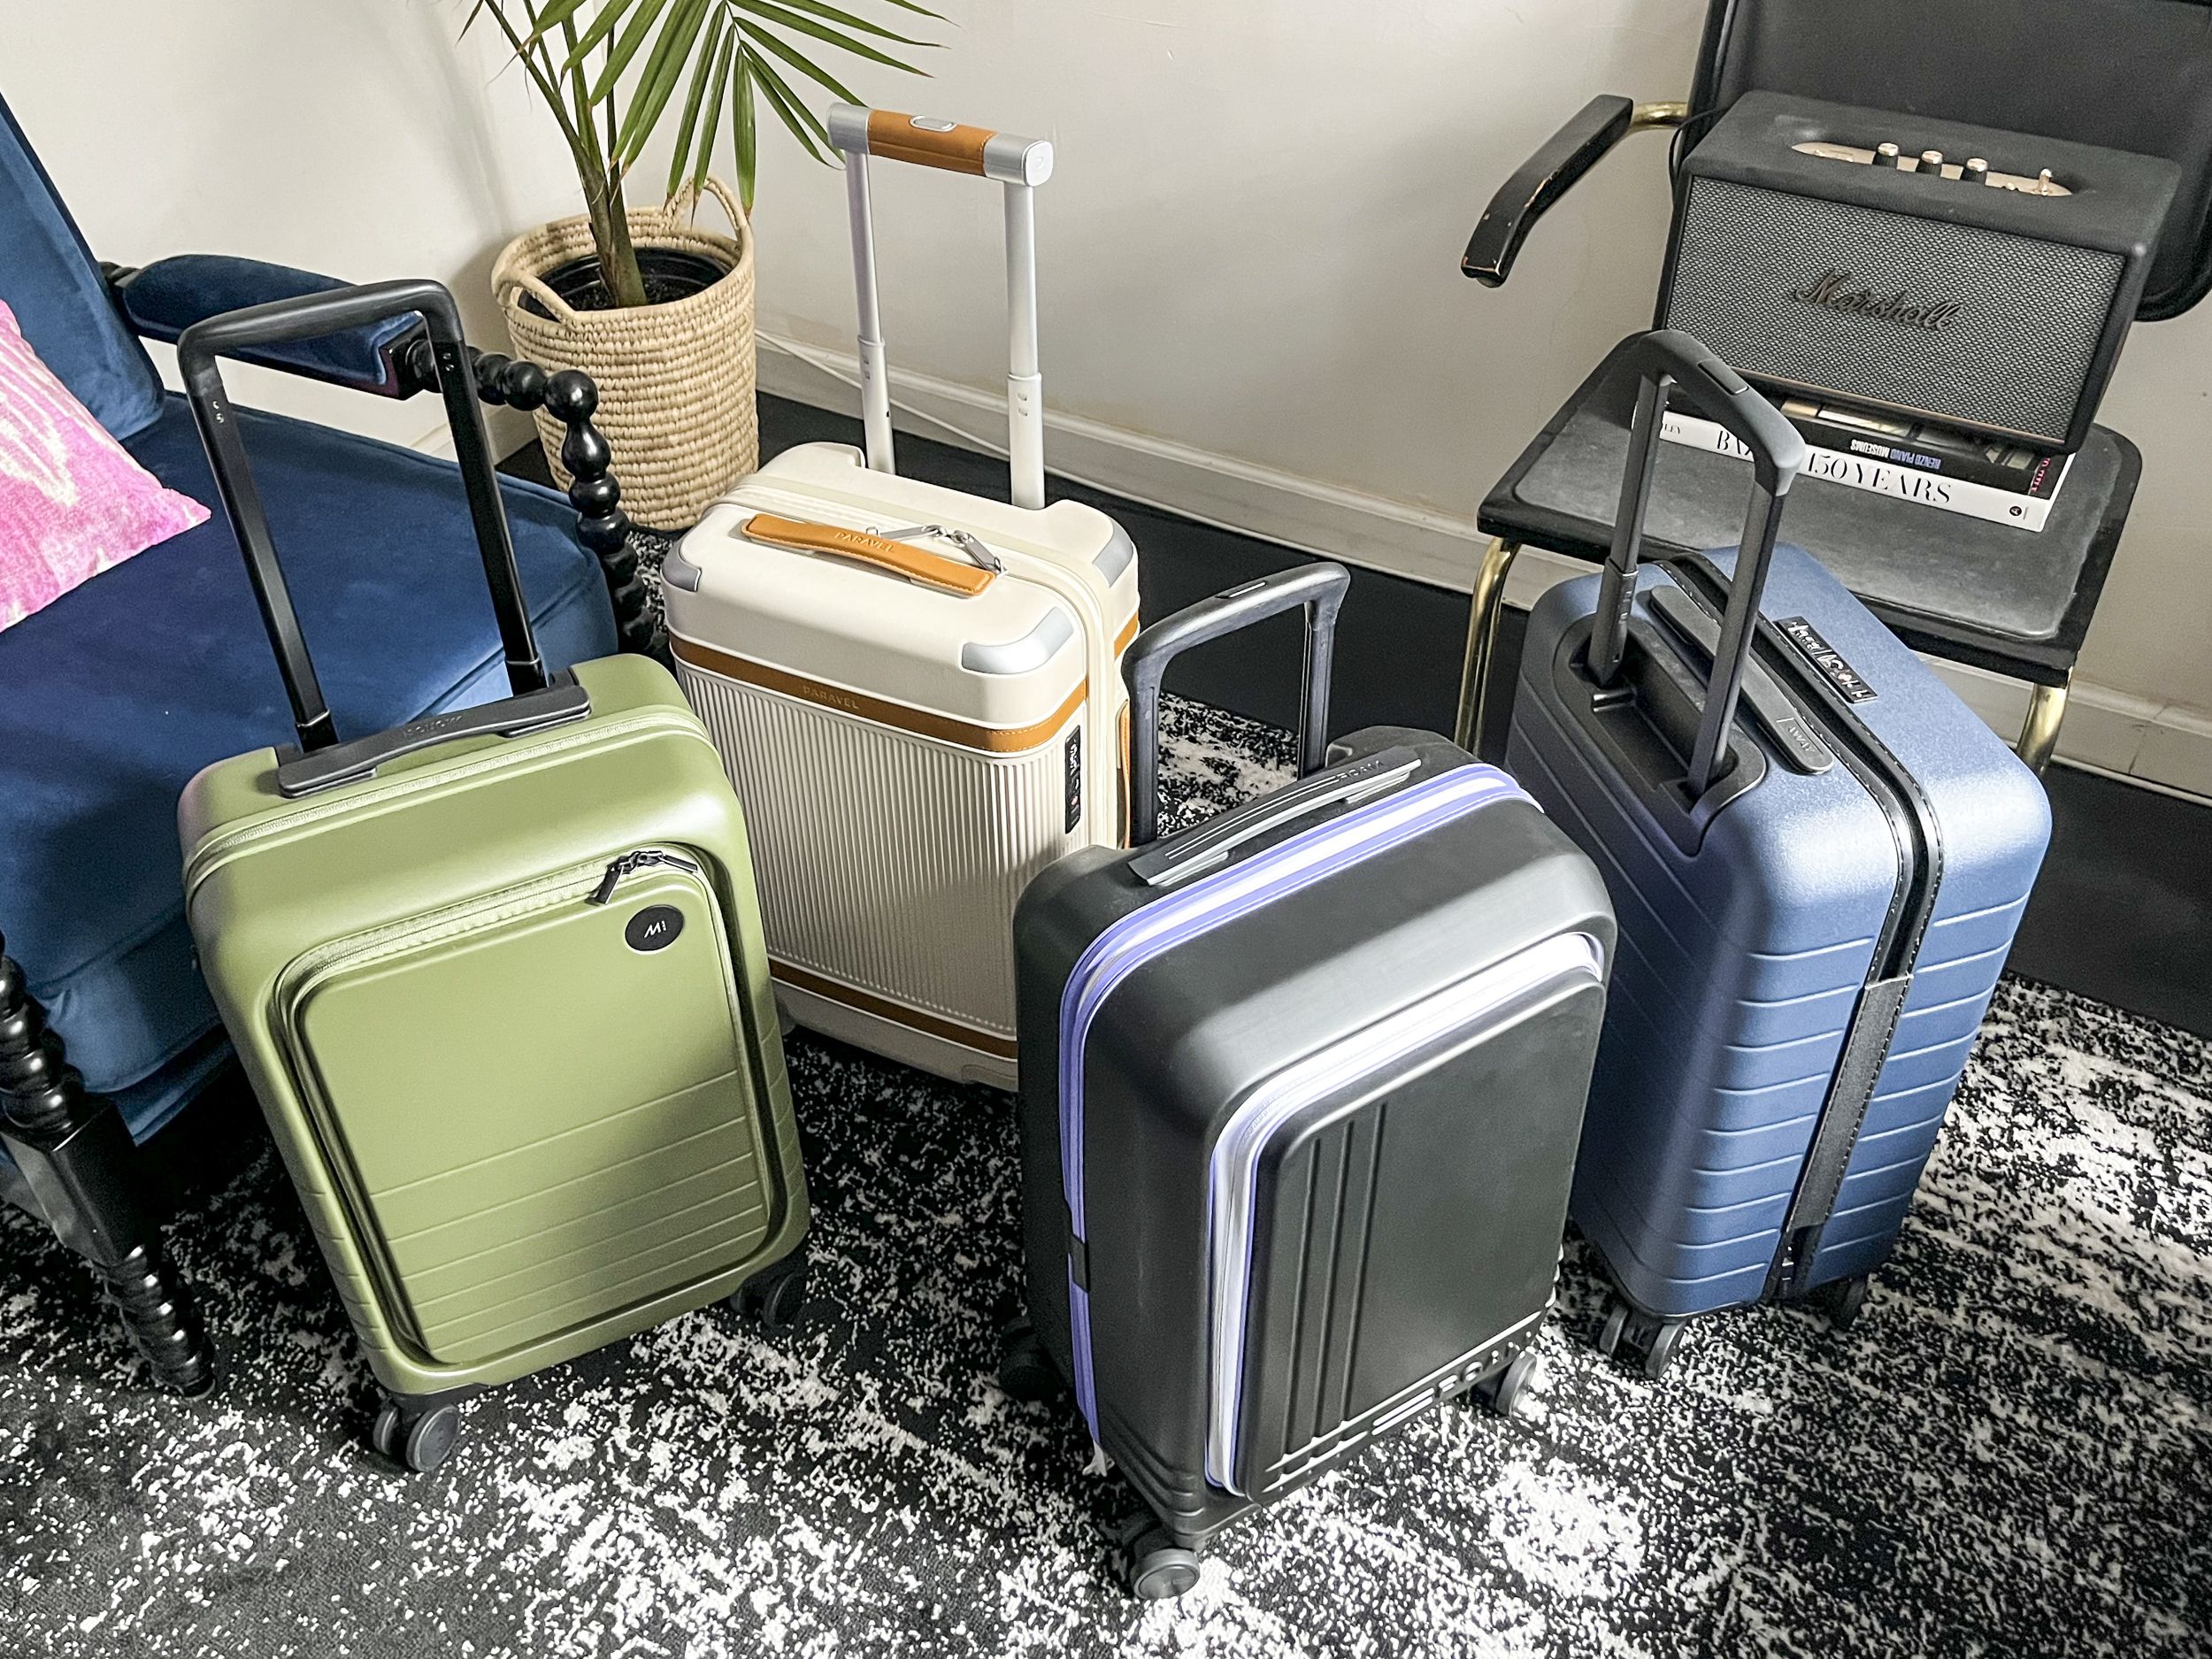 Roller Suitcases 007 Jpg 6500b6e8d9401 ?format=jpg